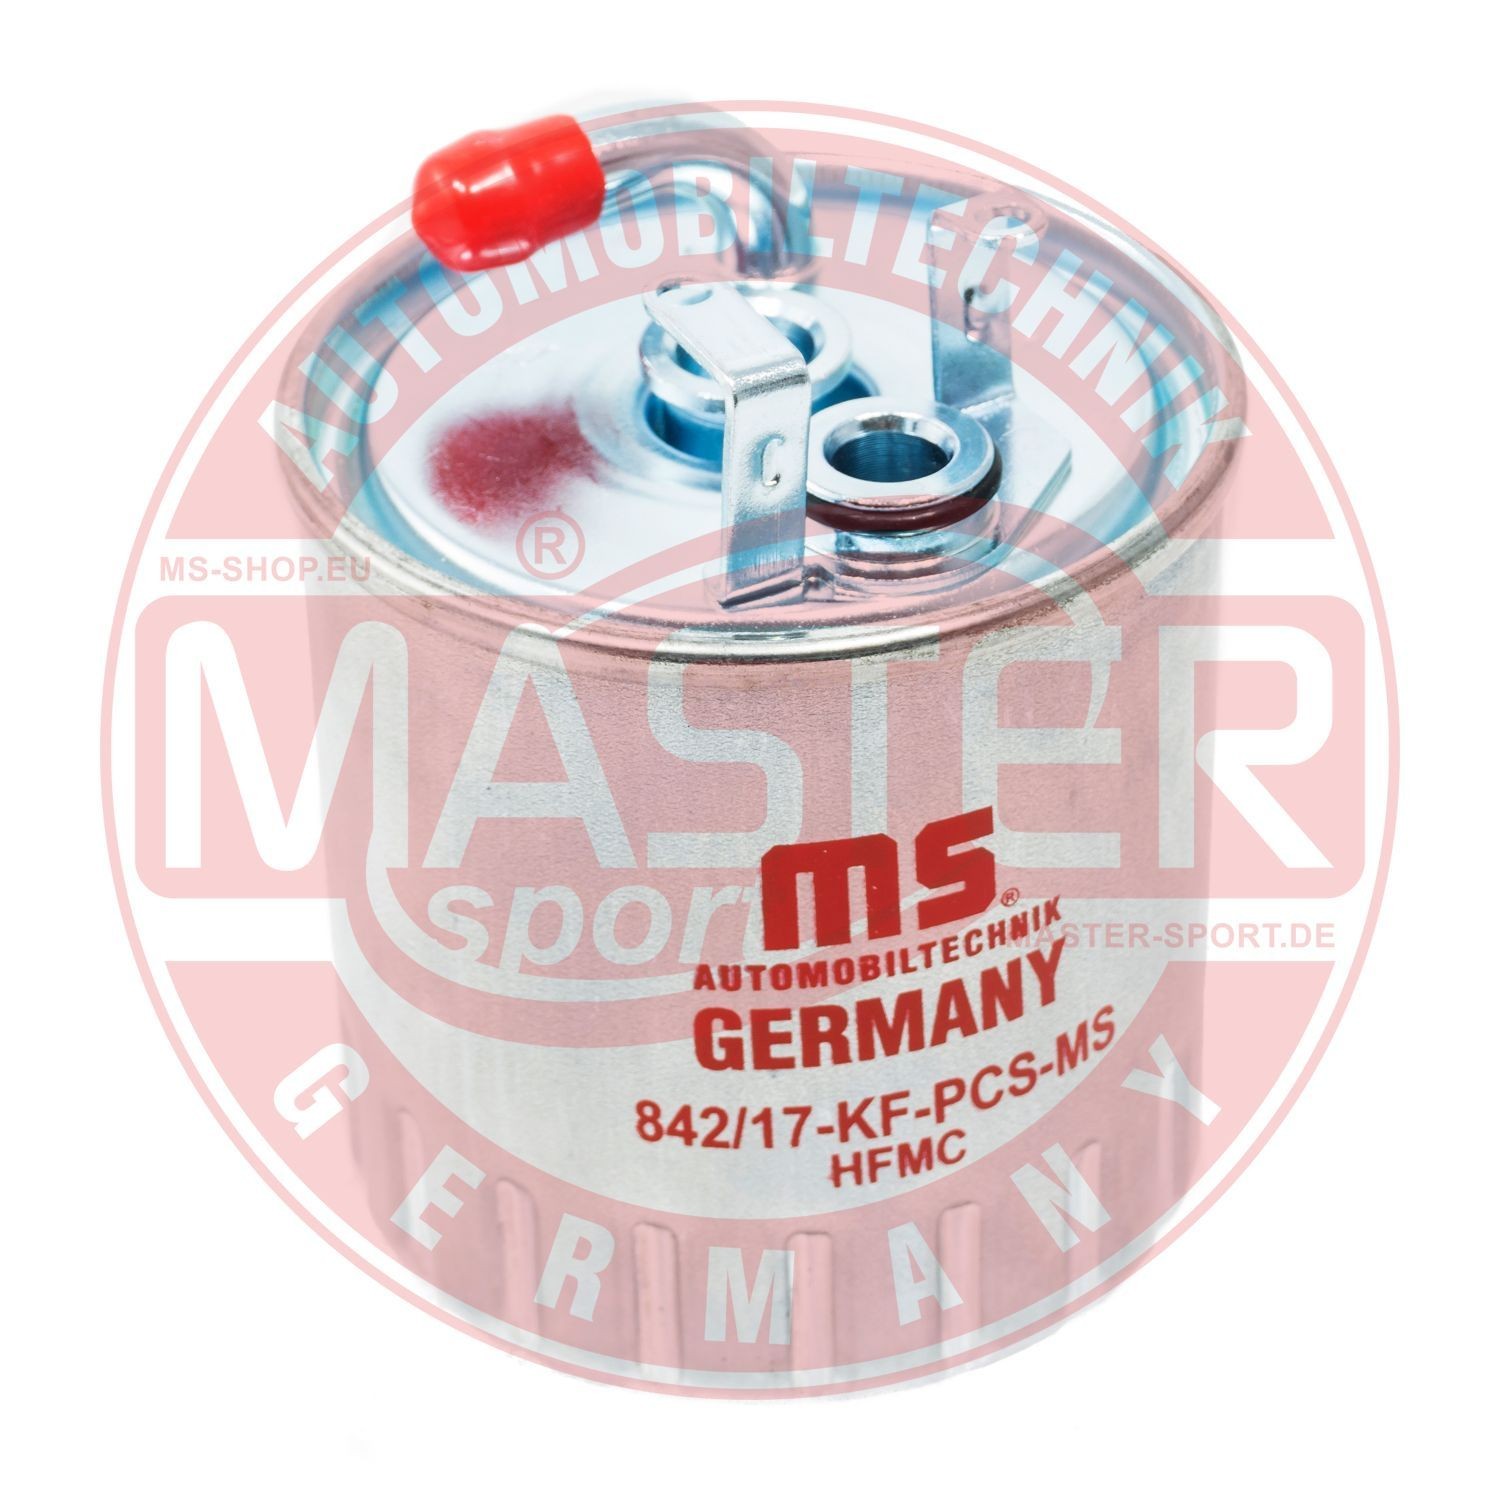 430842170 MASTER-SPORT 842/17-KF-PCS-MS Fuel filter A61-109-00852